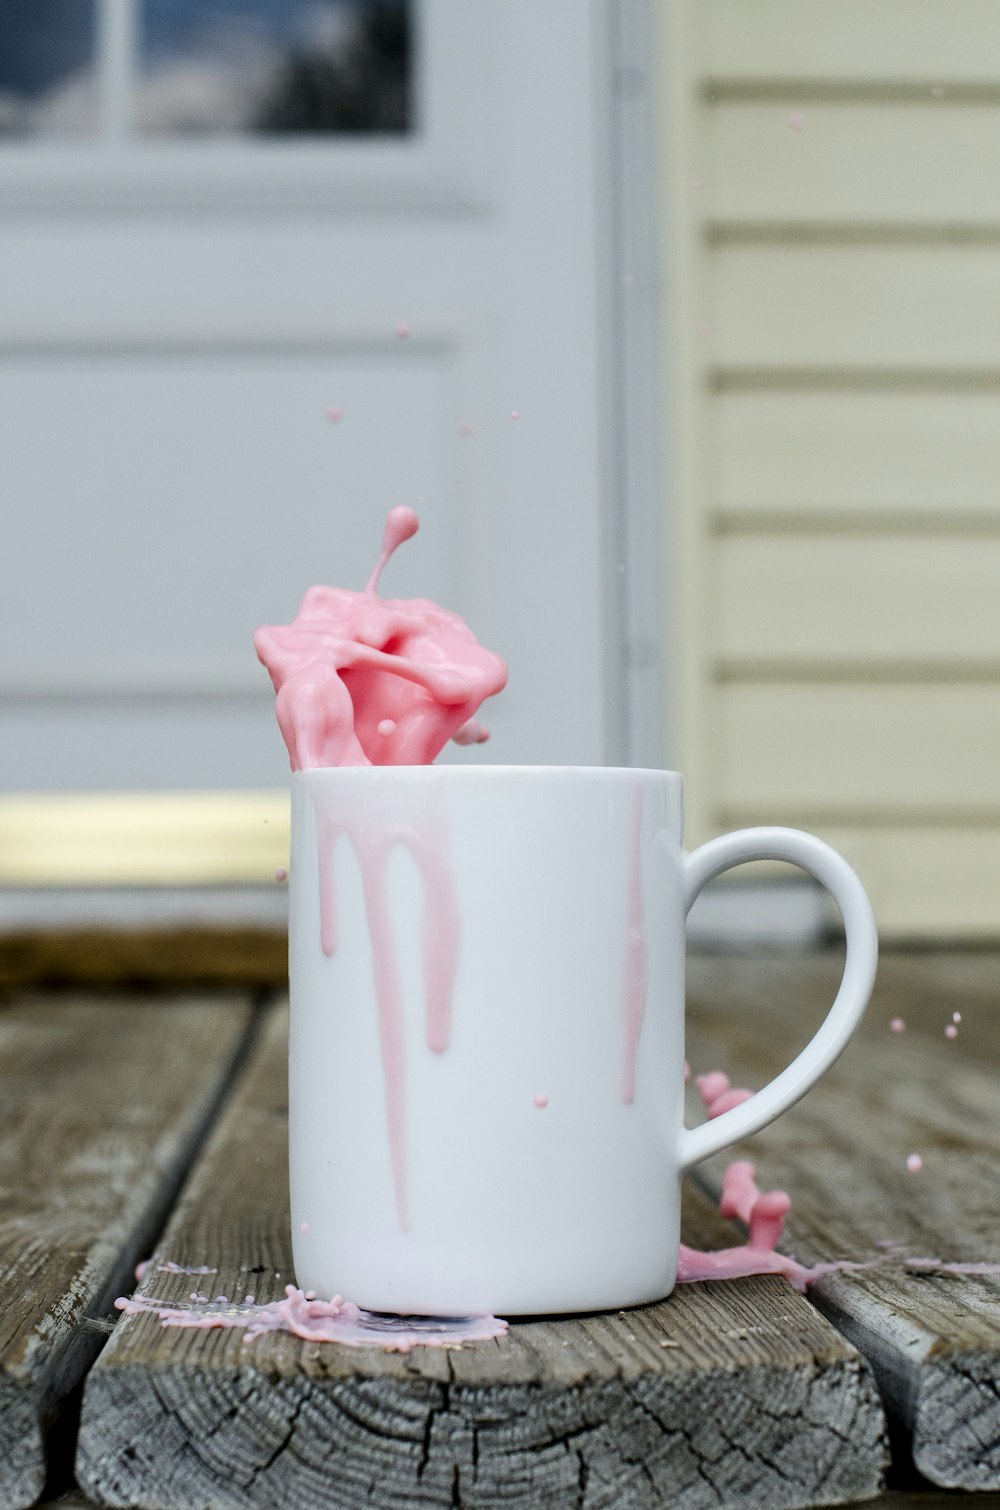 pink rose in white ceramic mug